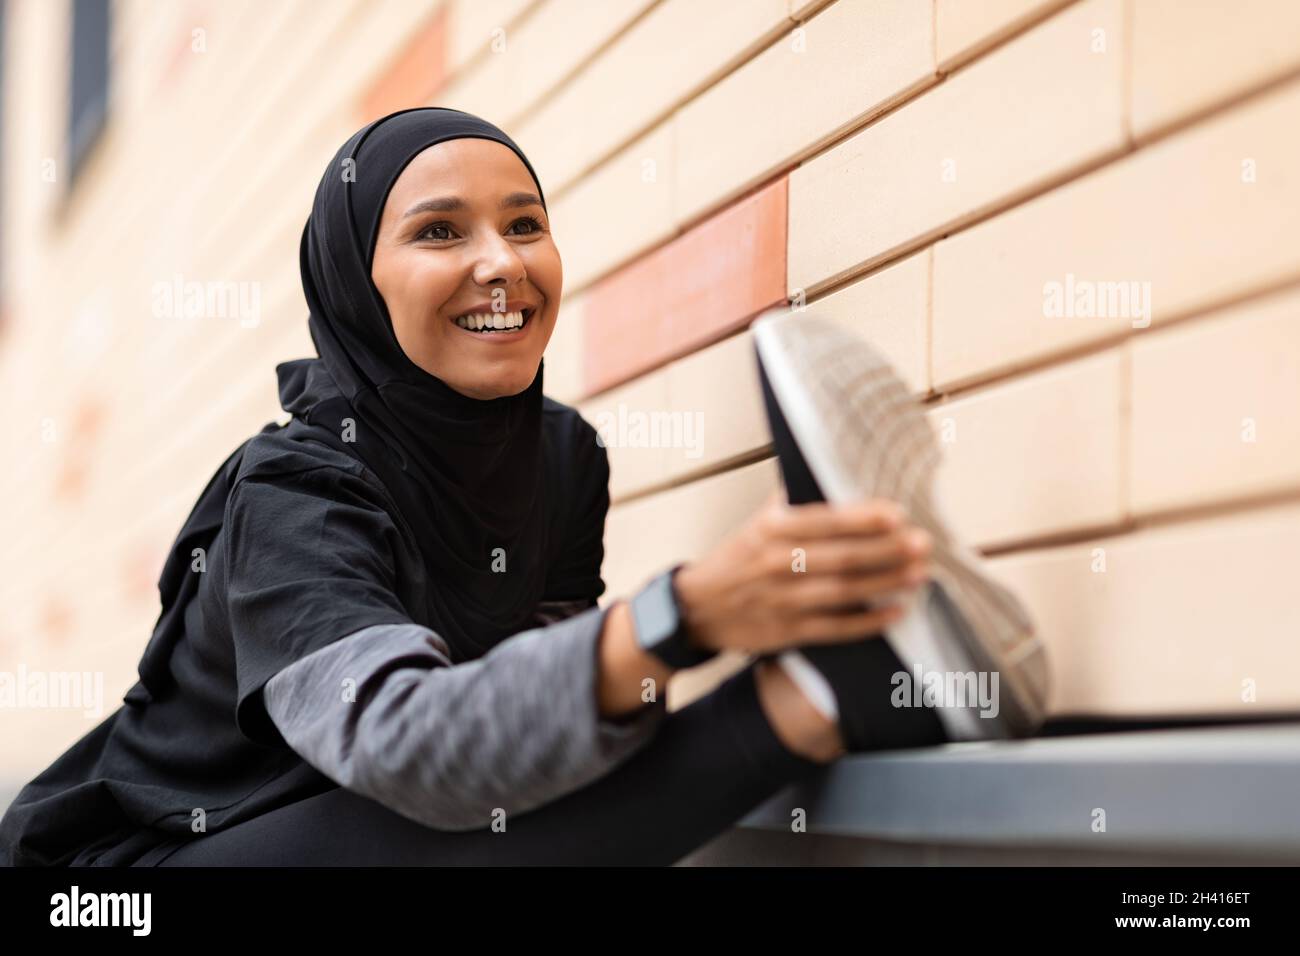 Atletica musulmana Lady in Sportswear riscaldamento prima di jogging all'aperto, allungando i muscoli delle gambe Foto Stock